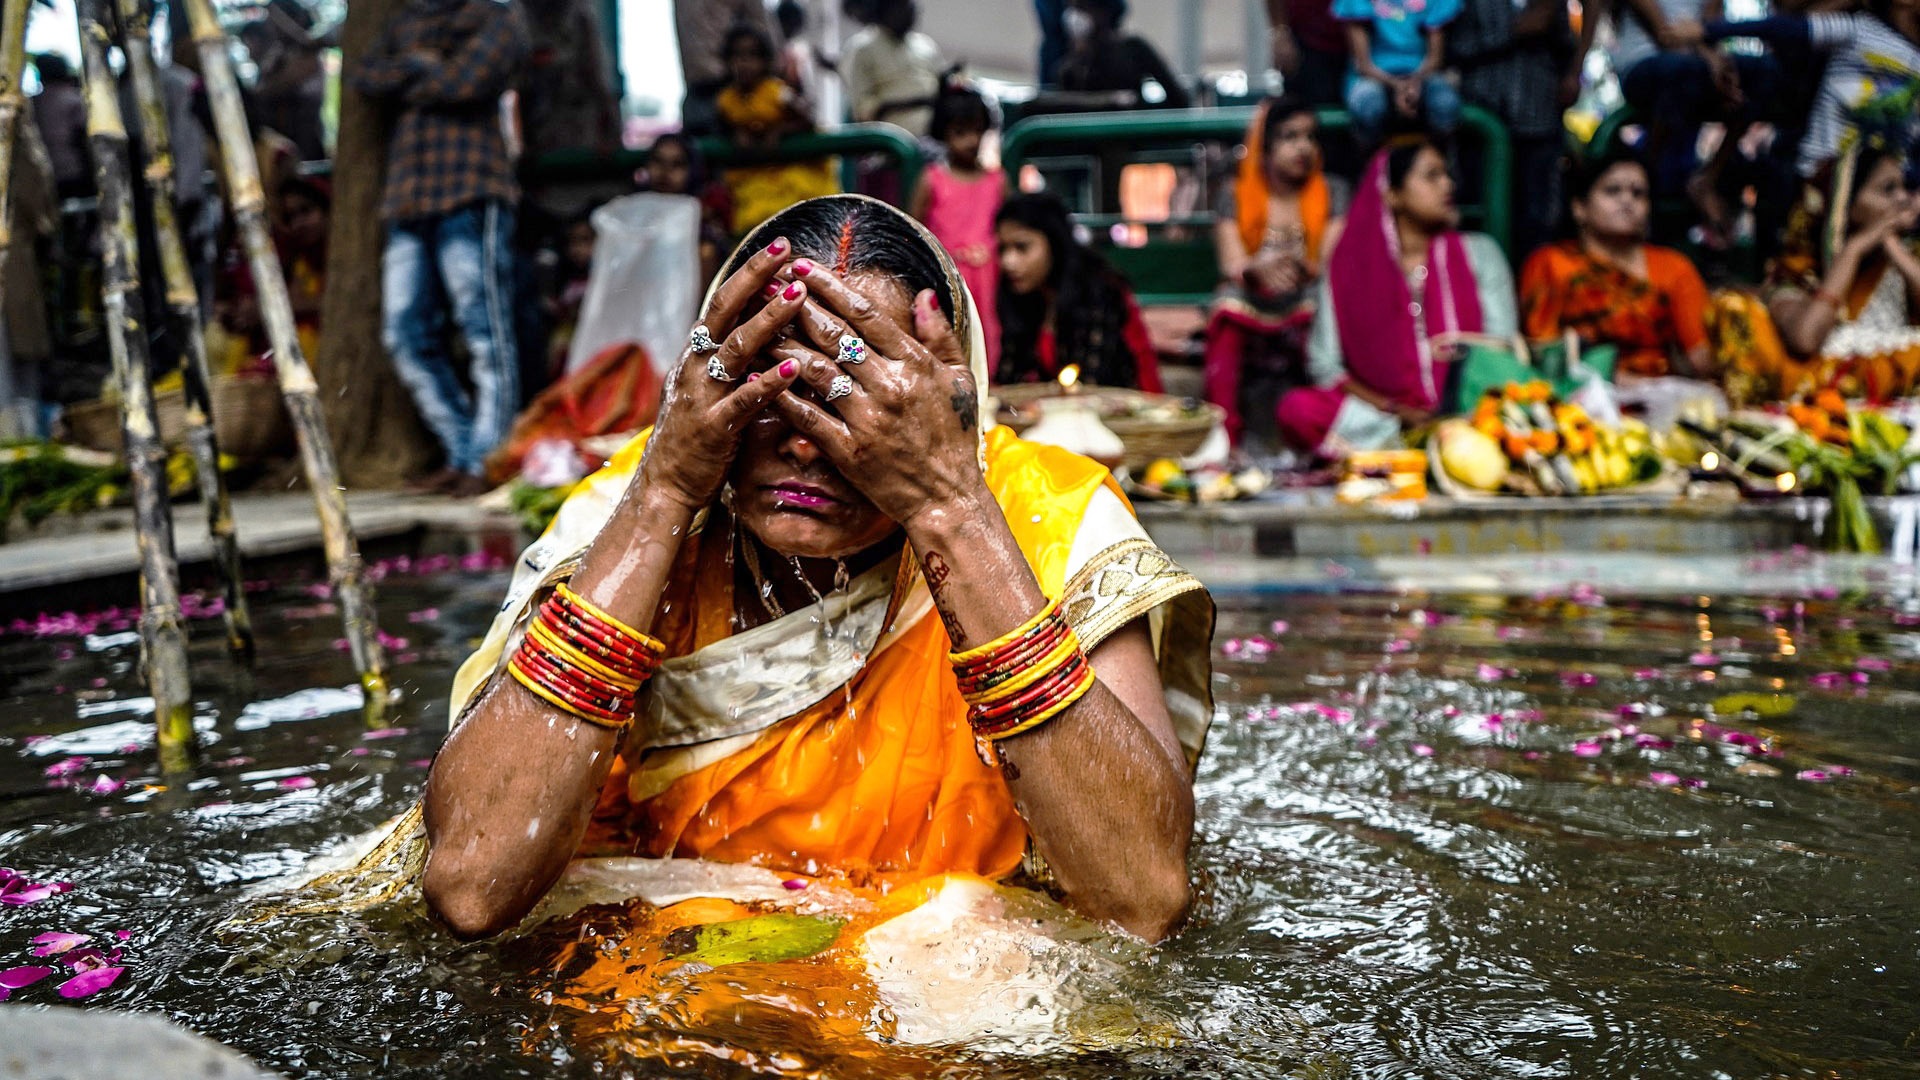 Hinduistin wäscht sich von schlechten Taten rein